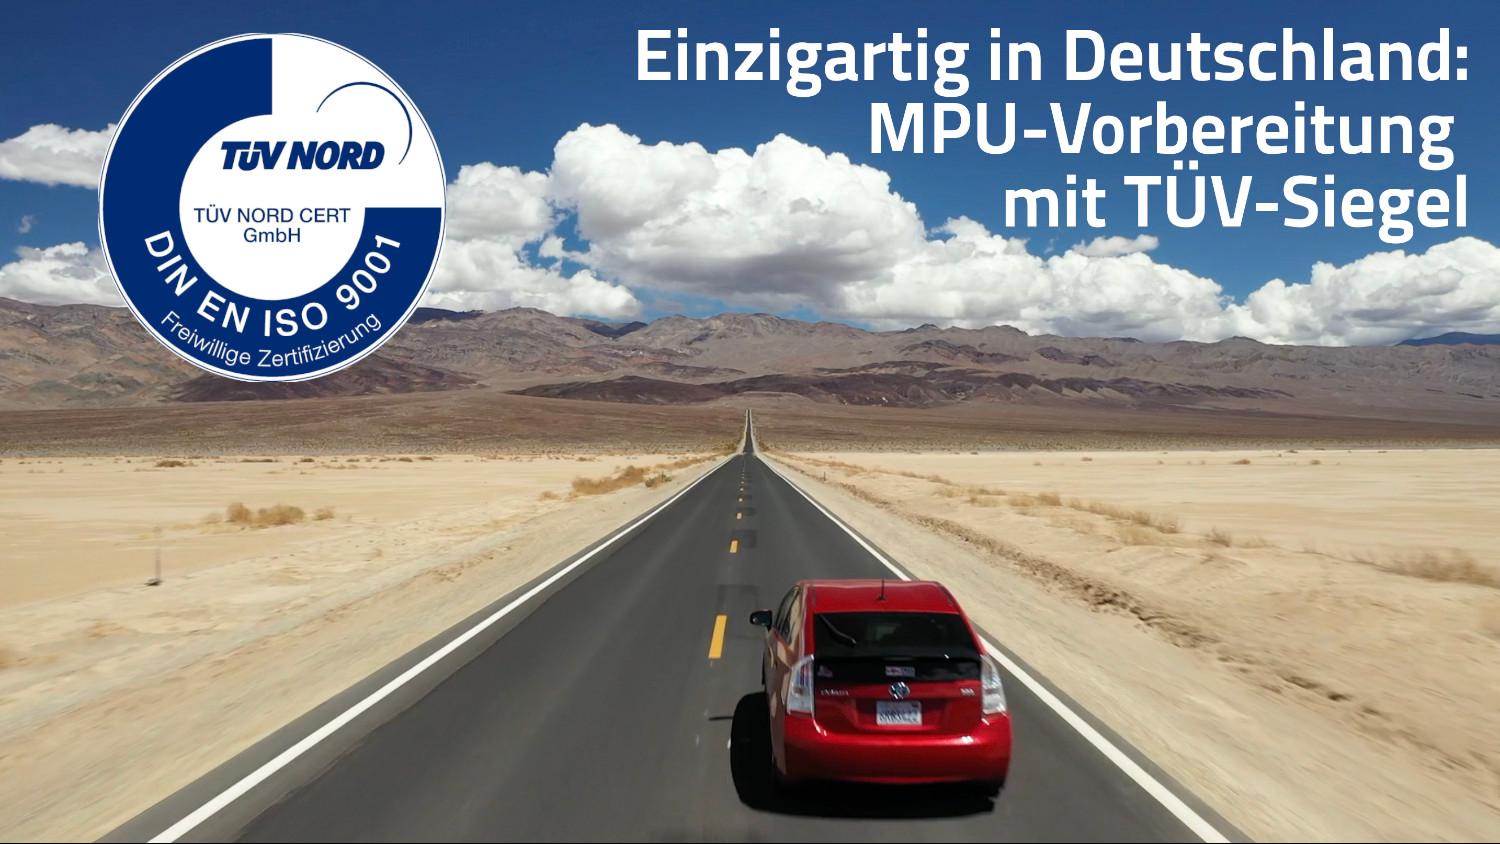 Verkehrspsychologe Dr. Deecke & Team | MPU Vorbereitung Mannheim, Tattersallstr. 2 in Mannheim